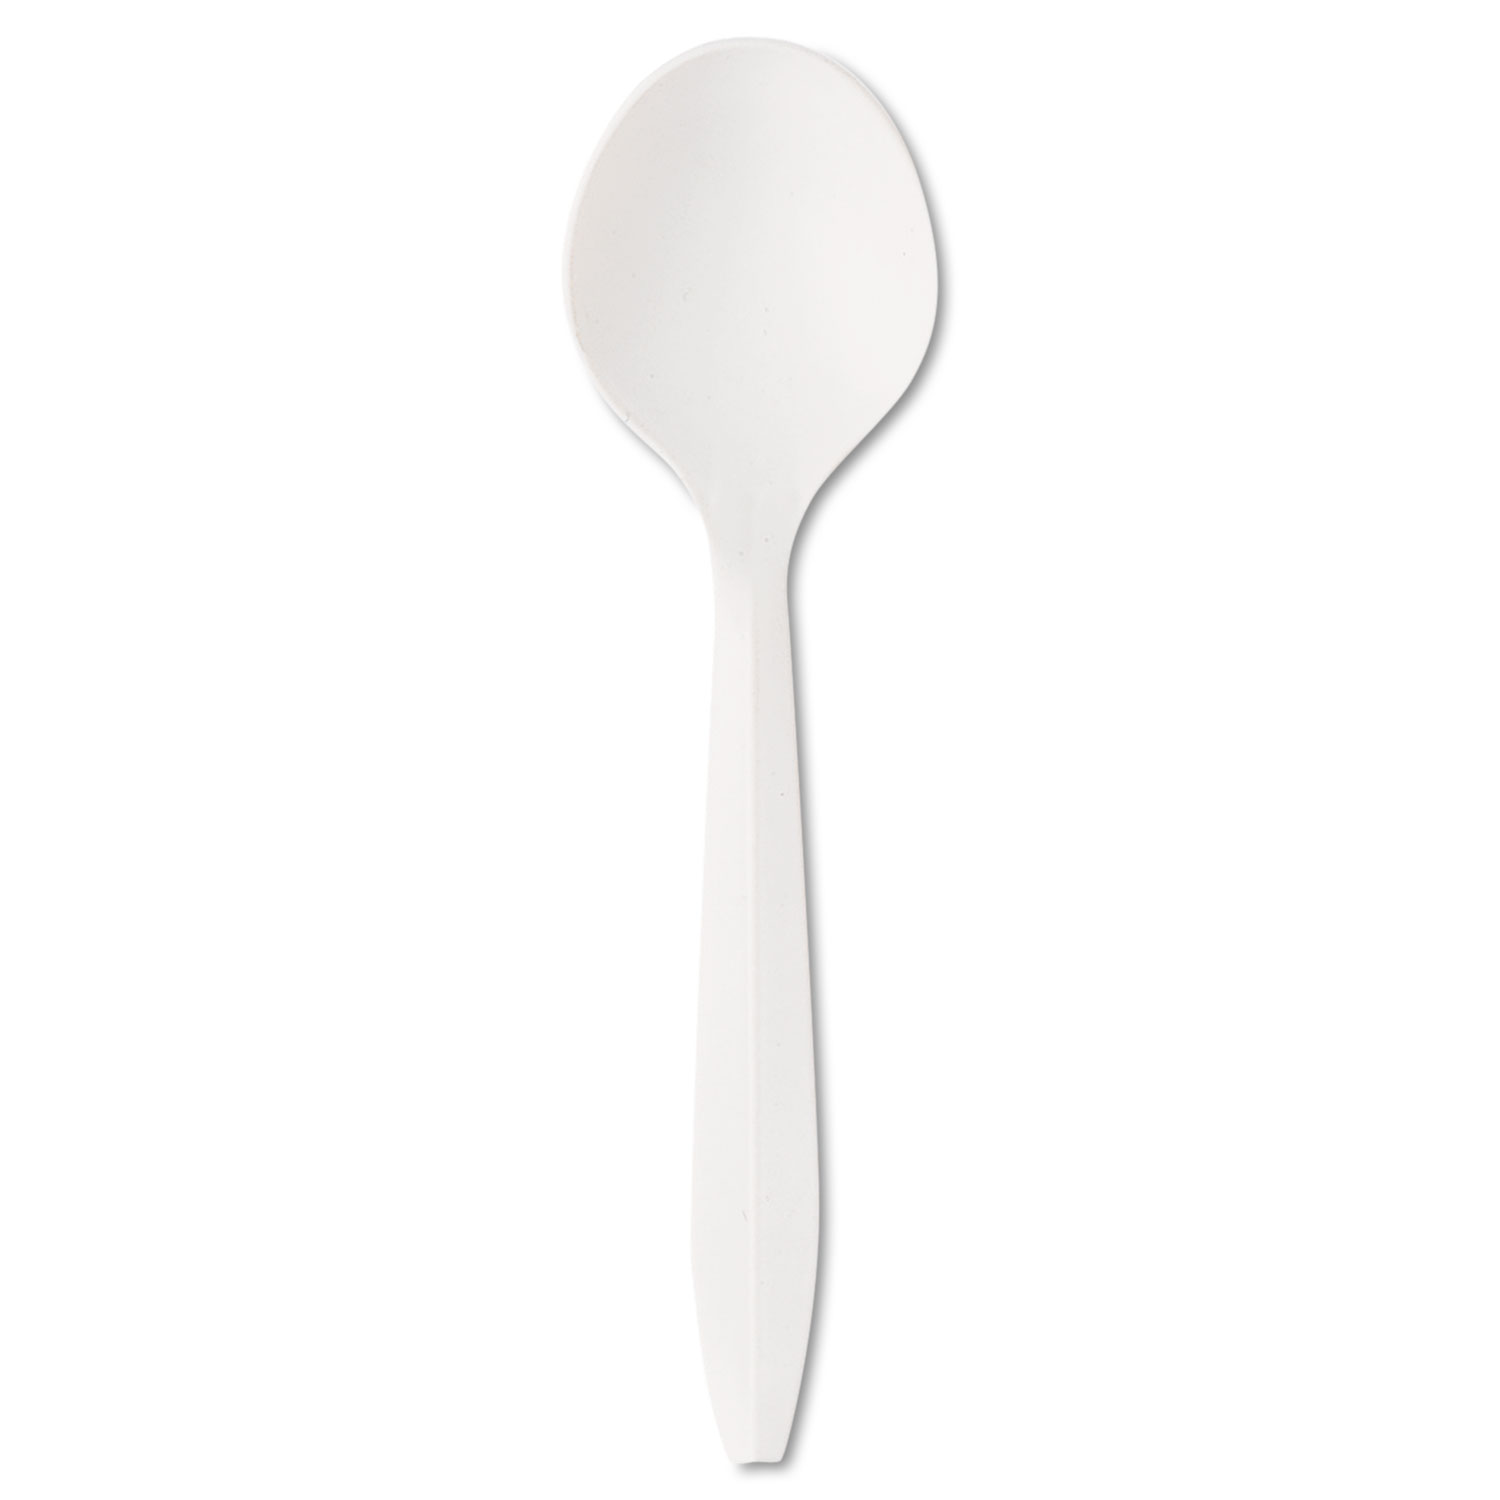  Boardwalk BWKSOUPSPOON Mediumweight Polystyrene Cutlery, Soup Spoon, White, 1000/Carton (BWKSOUPSPOON) 